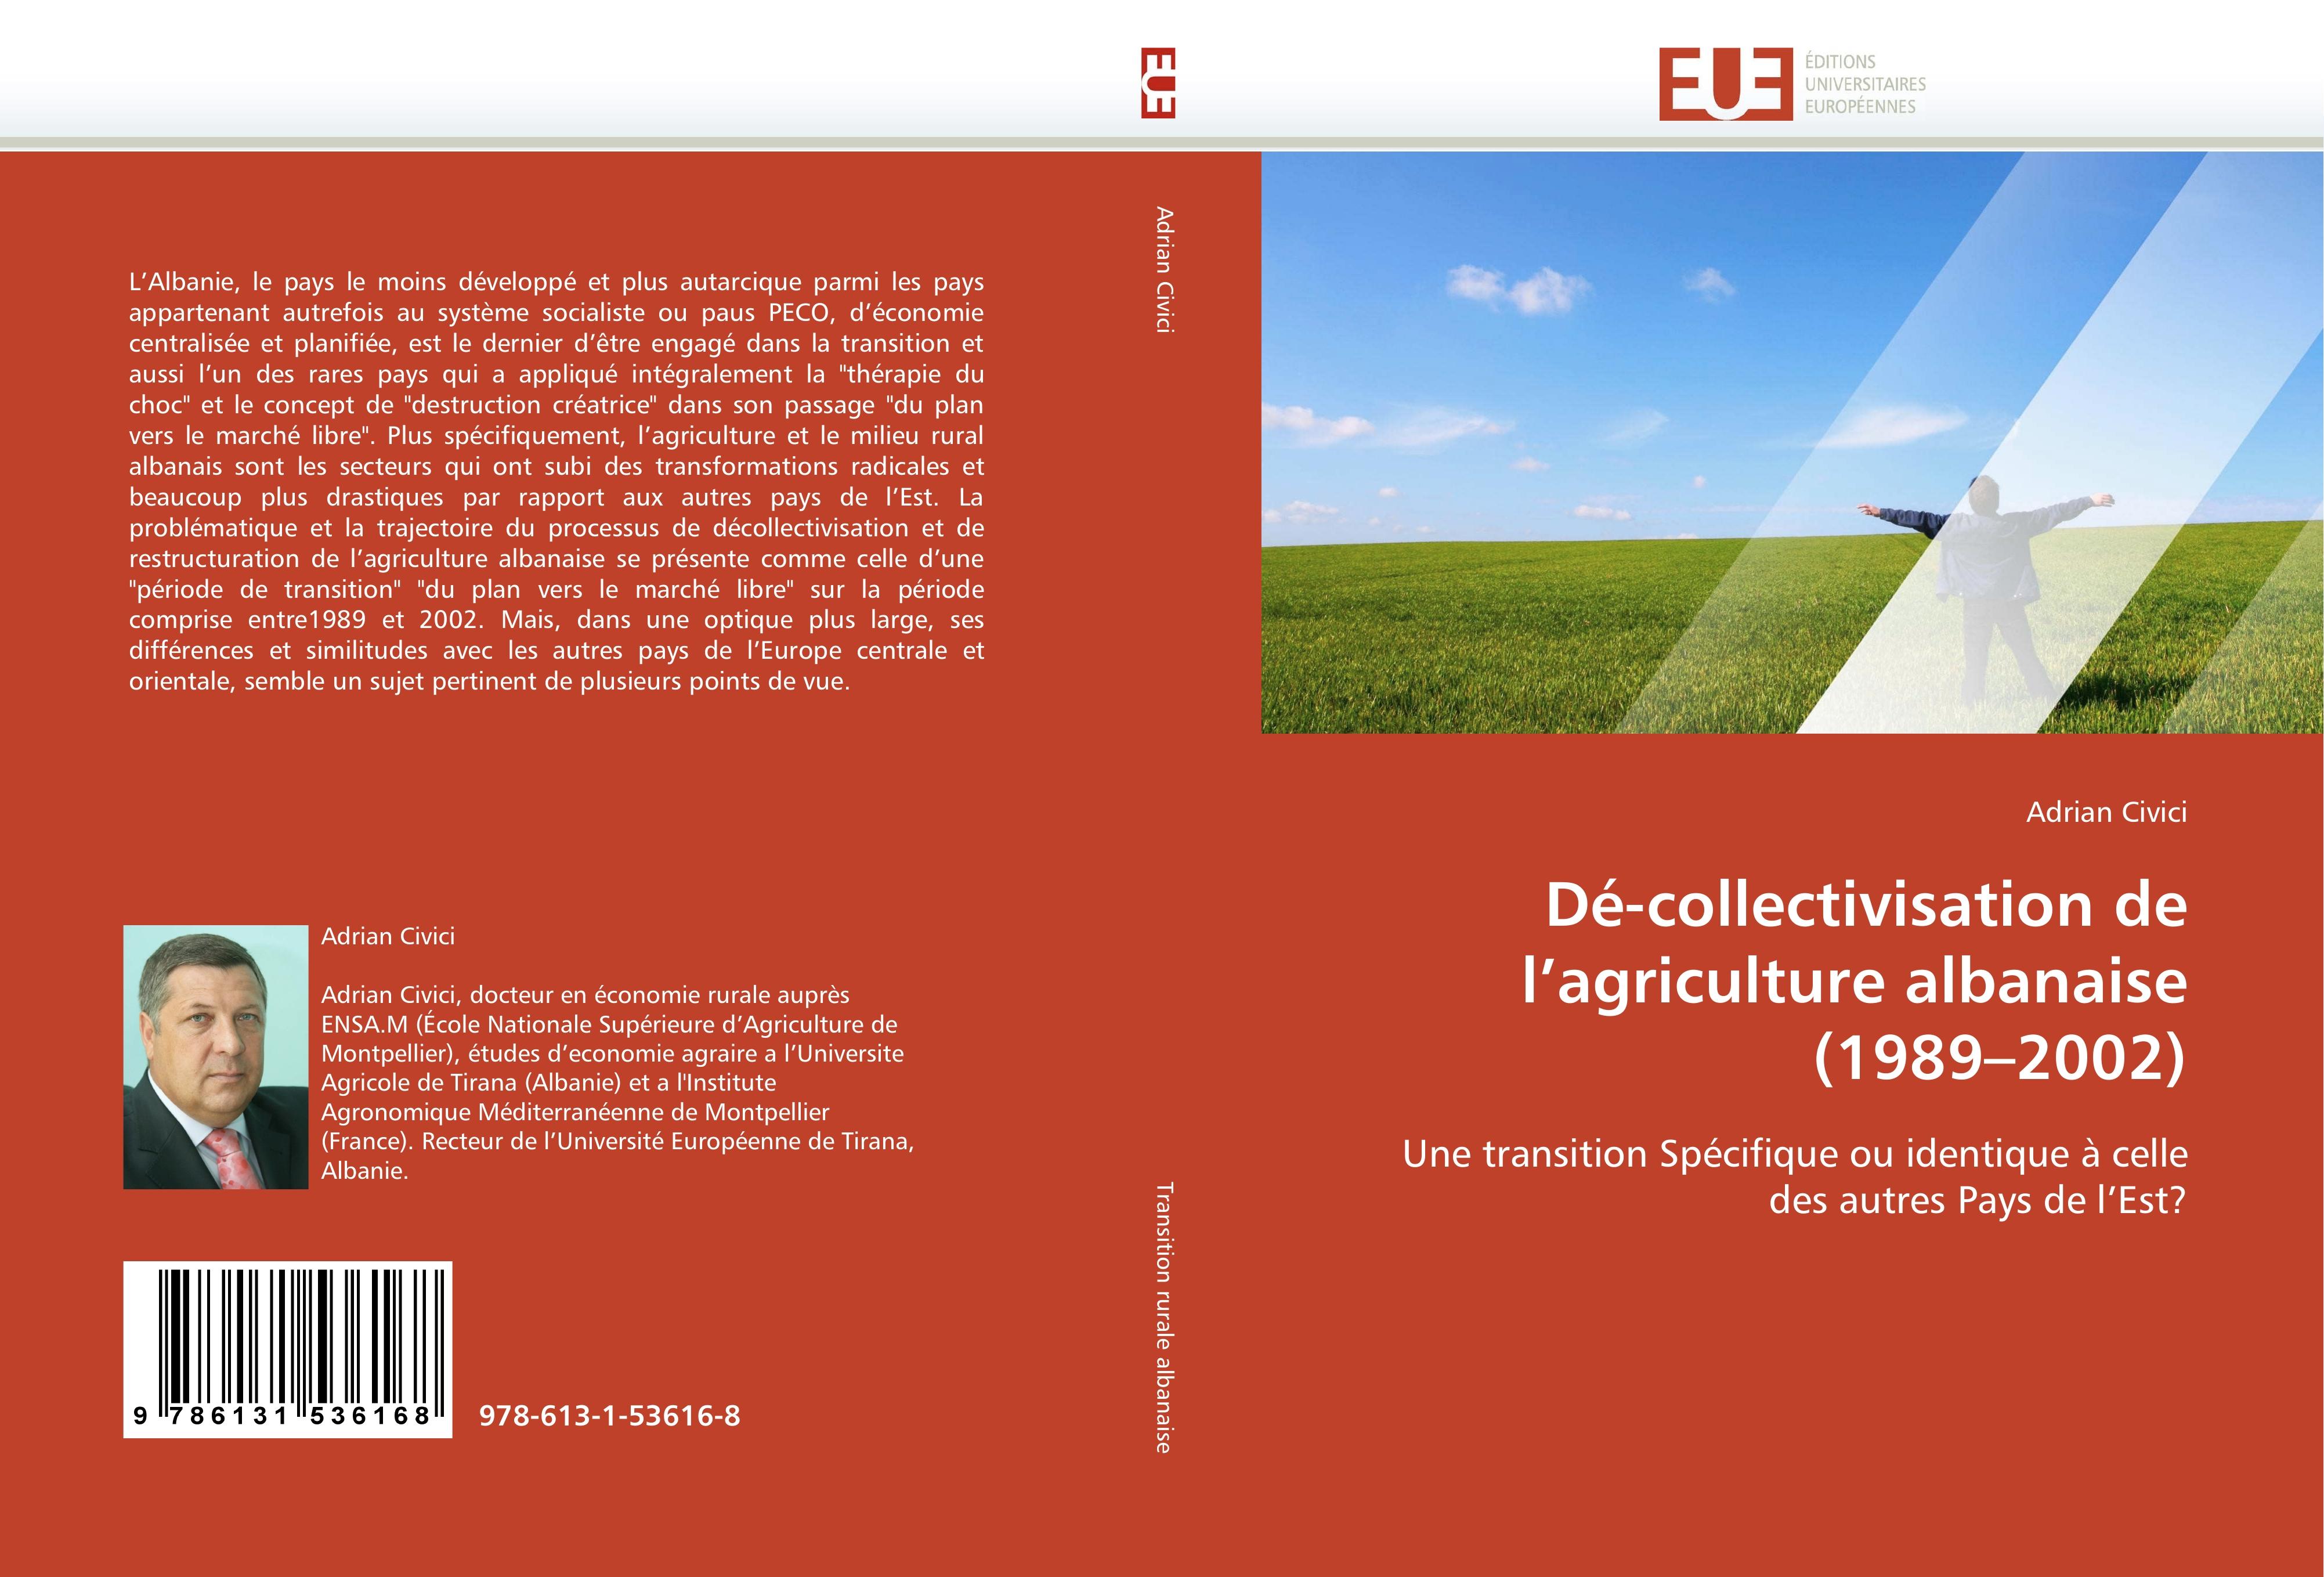 Dé-collectivisation de l agriculture albanaise (1989 - 2002 ) - Adrian Civici